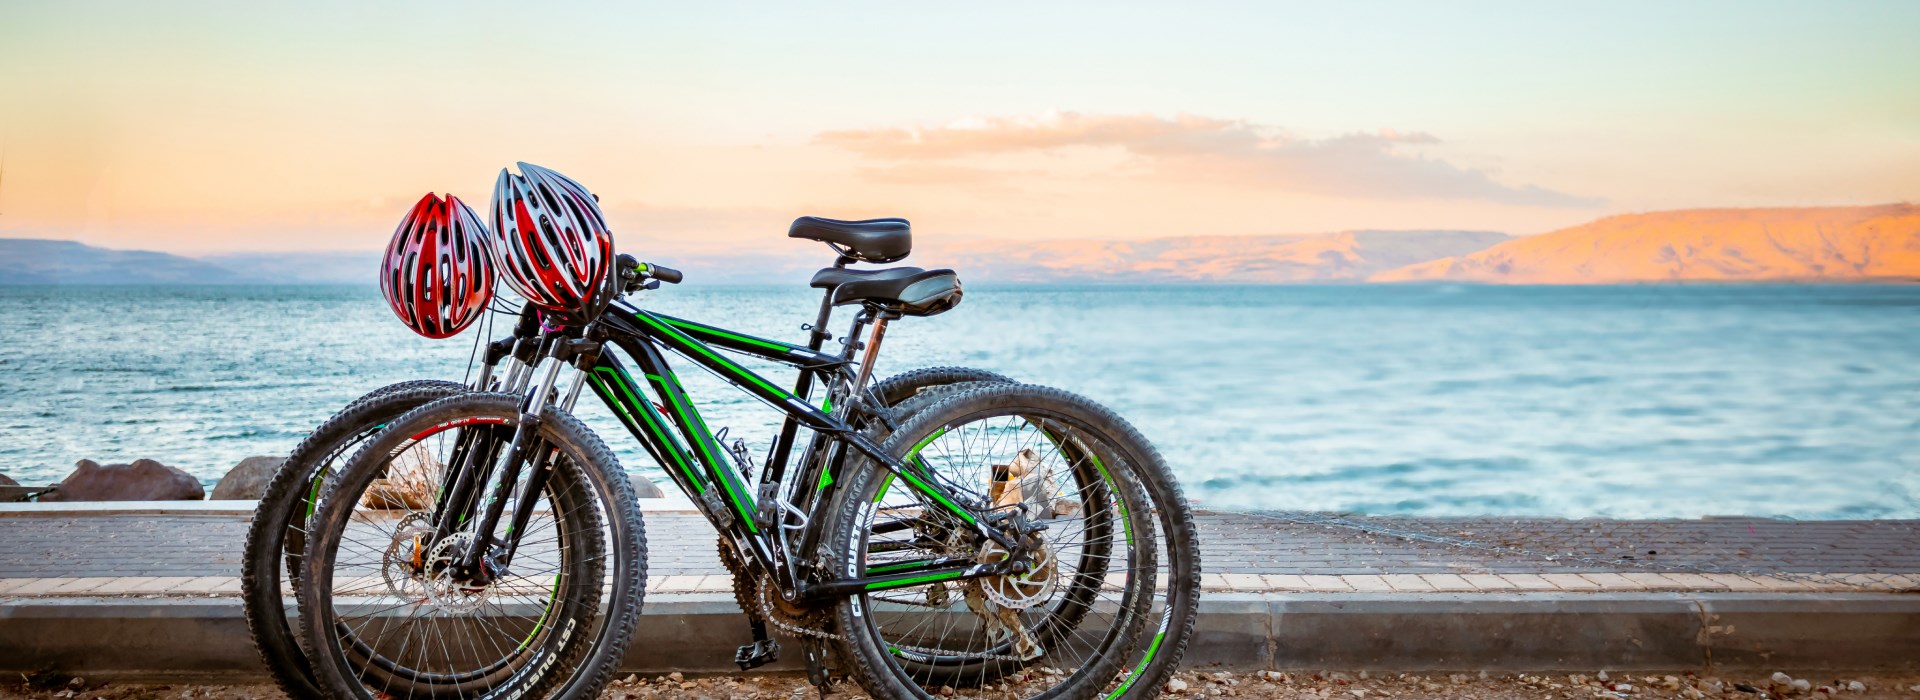 רשת מלונות אמיליס אביב טבריה - השכרת אופניים